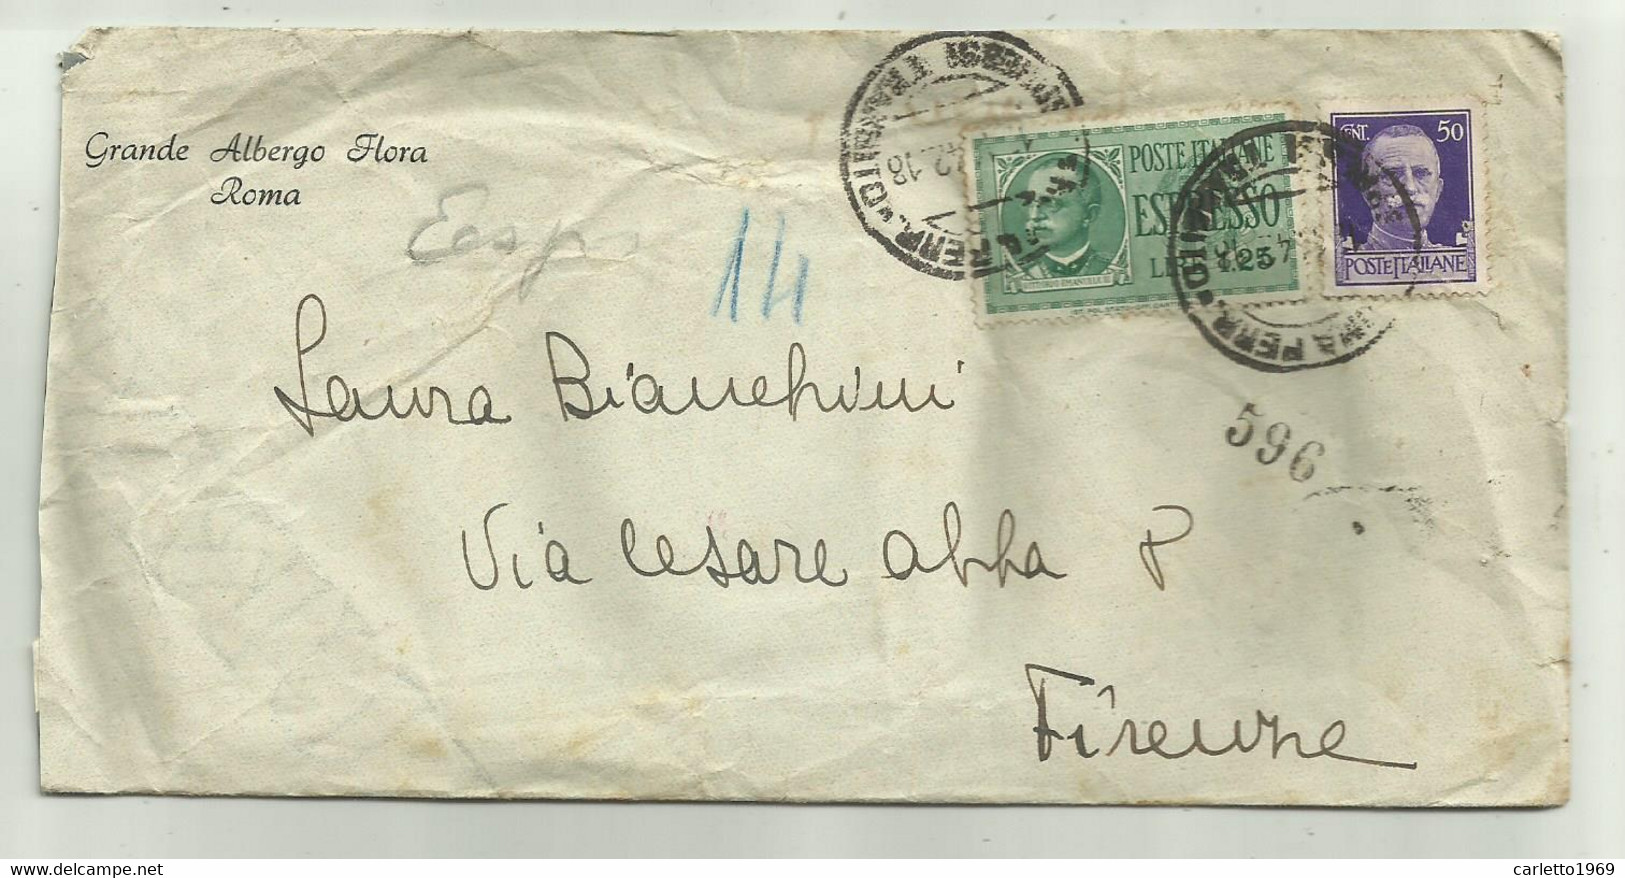 ESPRESSO LIRE 1,25 + CENT. 50 SU BUSTA GRANDE ALBERGO FLORA ROMA 1942 - Usados